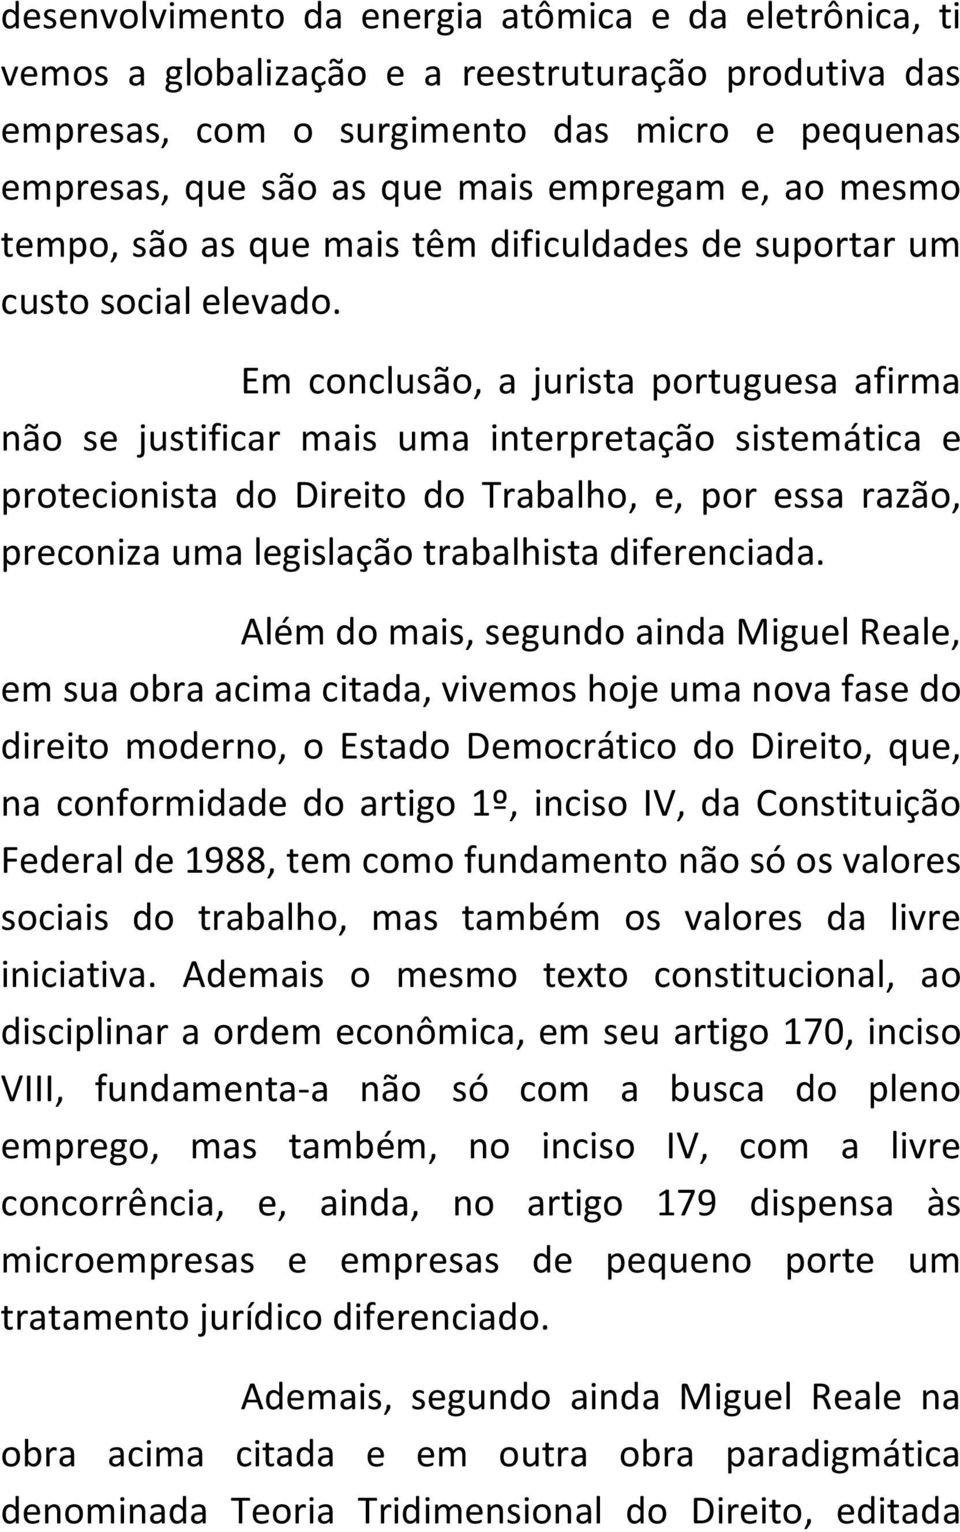 Em conclusão, a jurista portuguesa afirma não se justificar mais uma interpretação sistemática e protecionista do Direito do Trabalho, e, por essa razão, preconiza uma legislação trabalhista